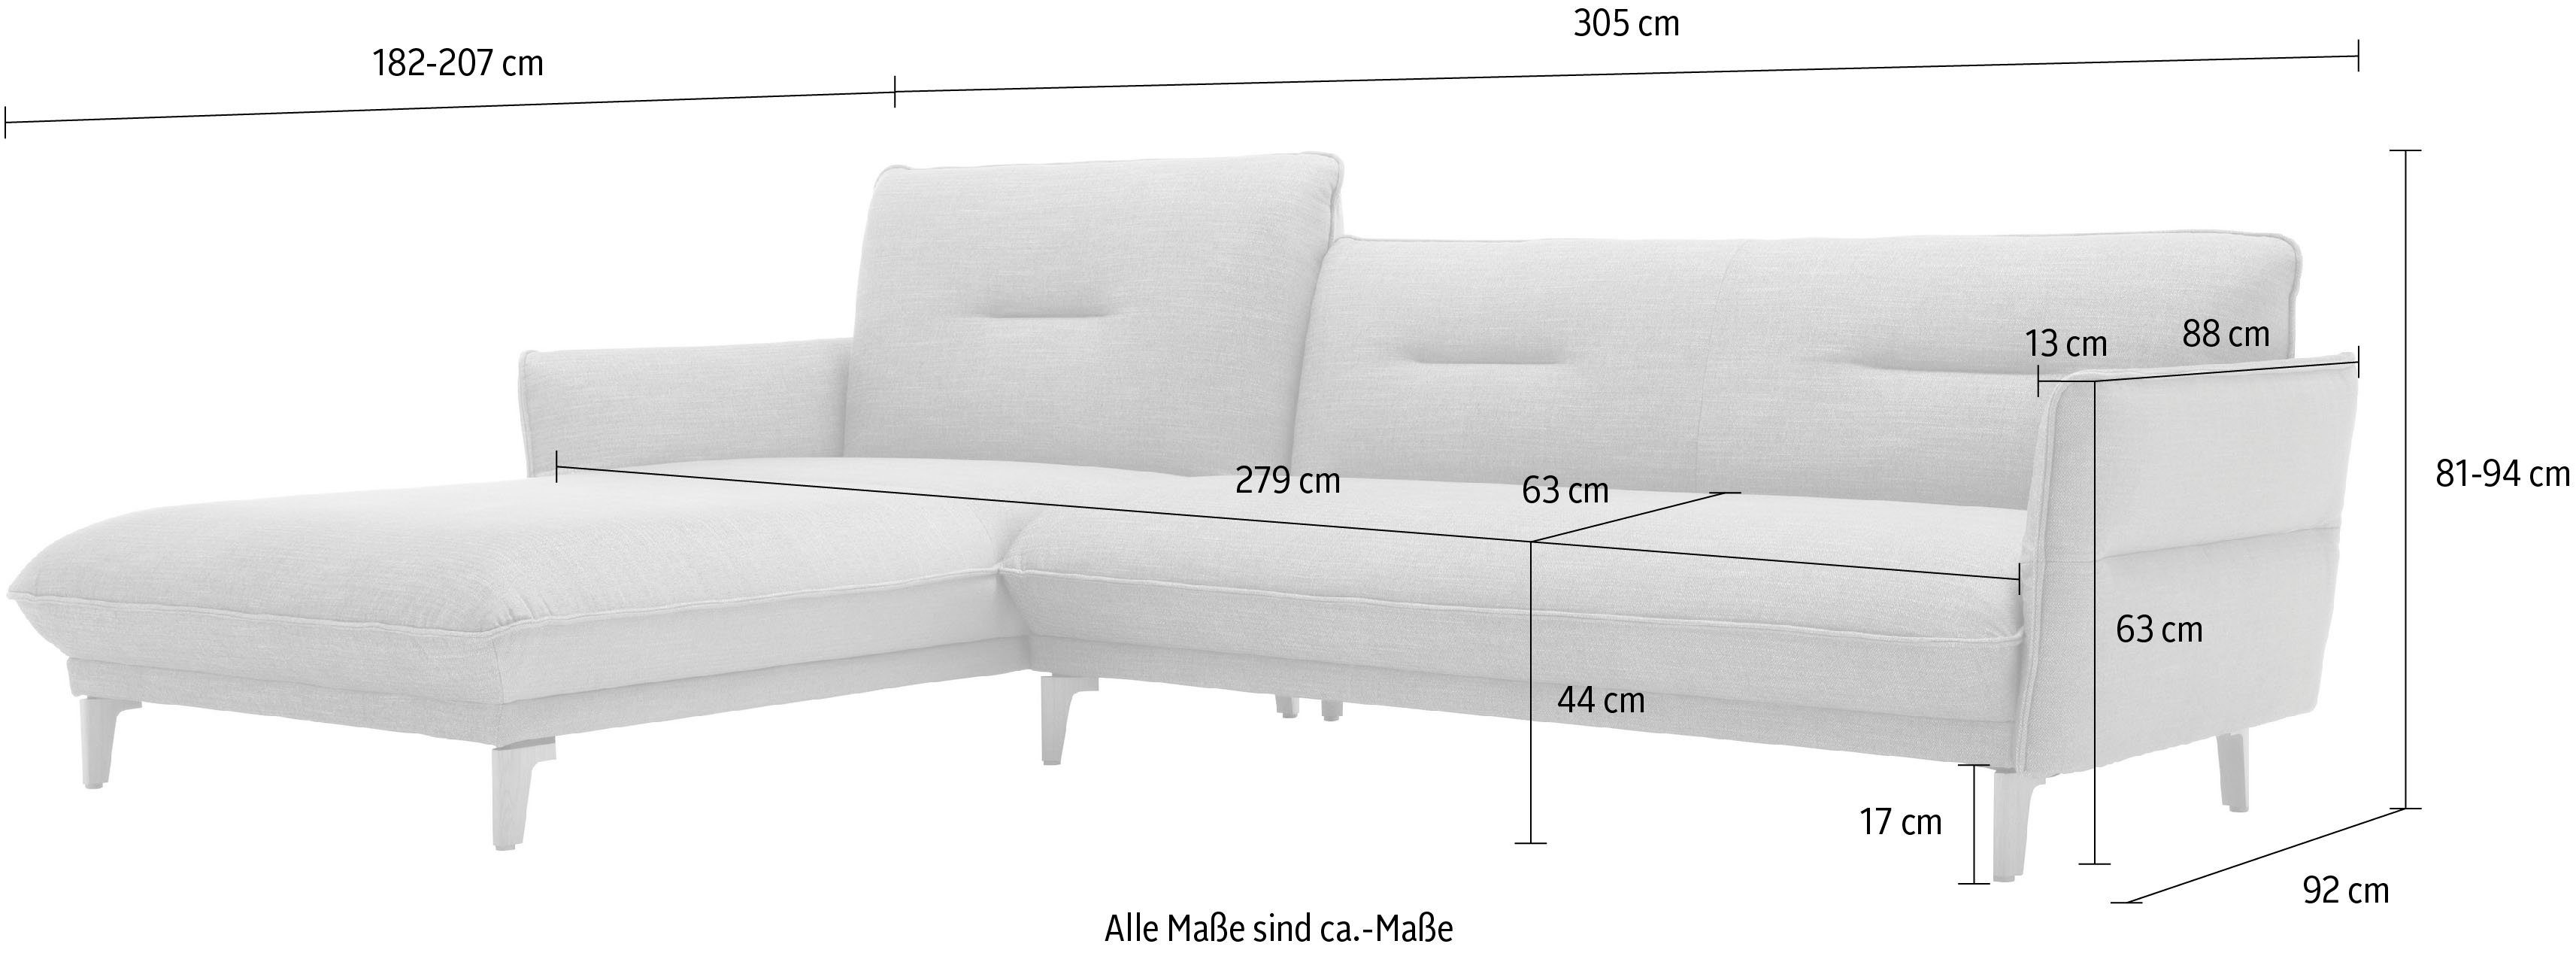 cm hs.430, 068-69 305 hülsta Neigefunktion, Breite Ecksofa Recamiere purpurviolett-natur sofa hoher Rücken mit